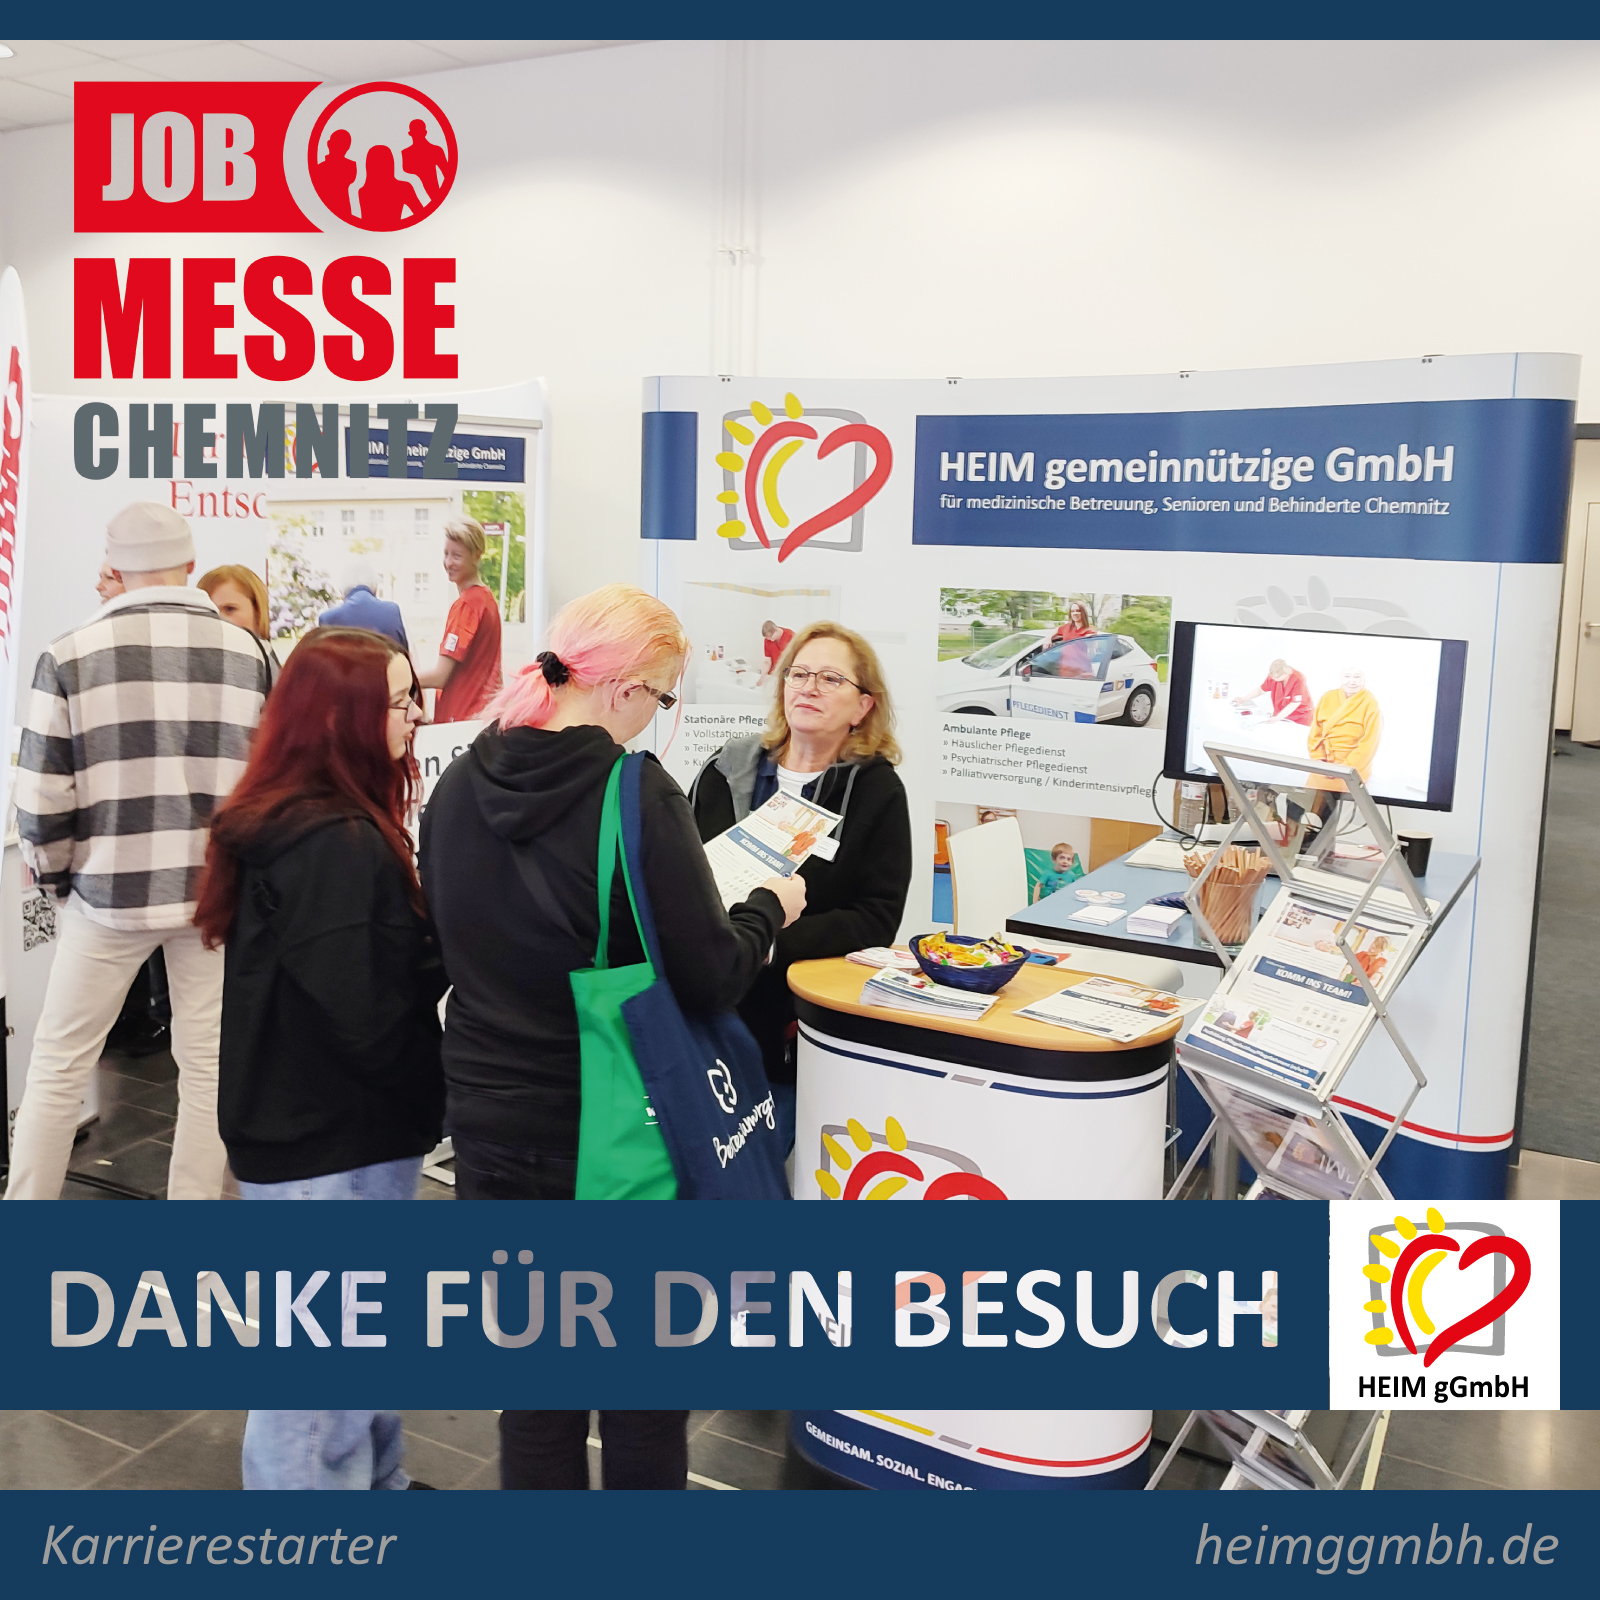 Wir waren auf der Jobmesse Chemnitz. Die HEIM gemeinnützige GmbH aus Chemnitz präsentierte Stellenangebote und Ausbildungsmöglichkeiten.